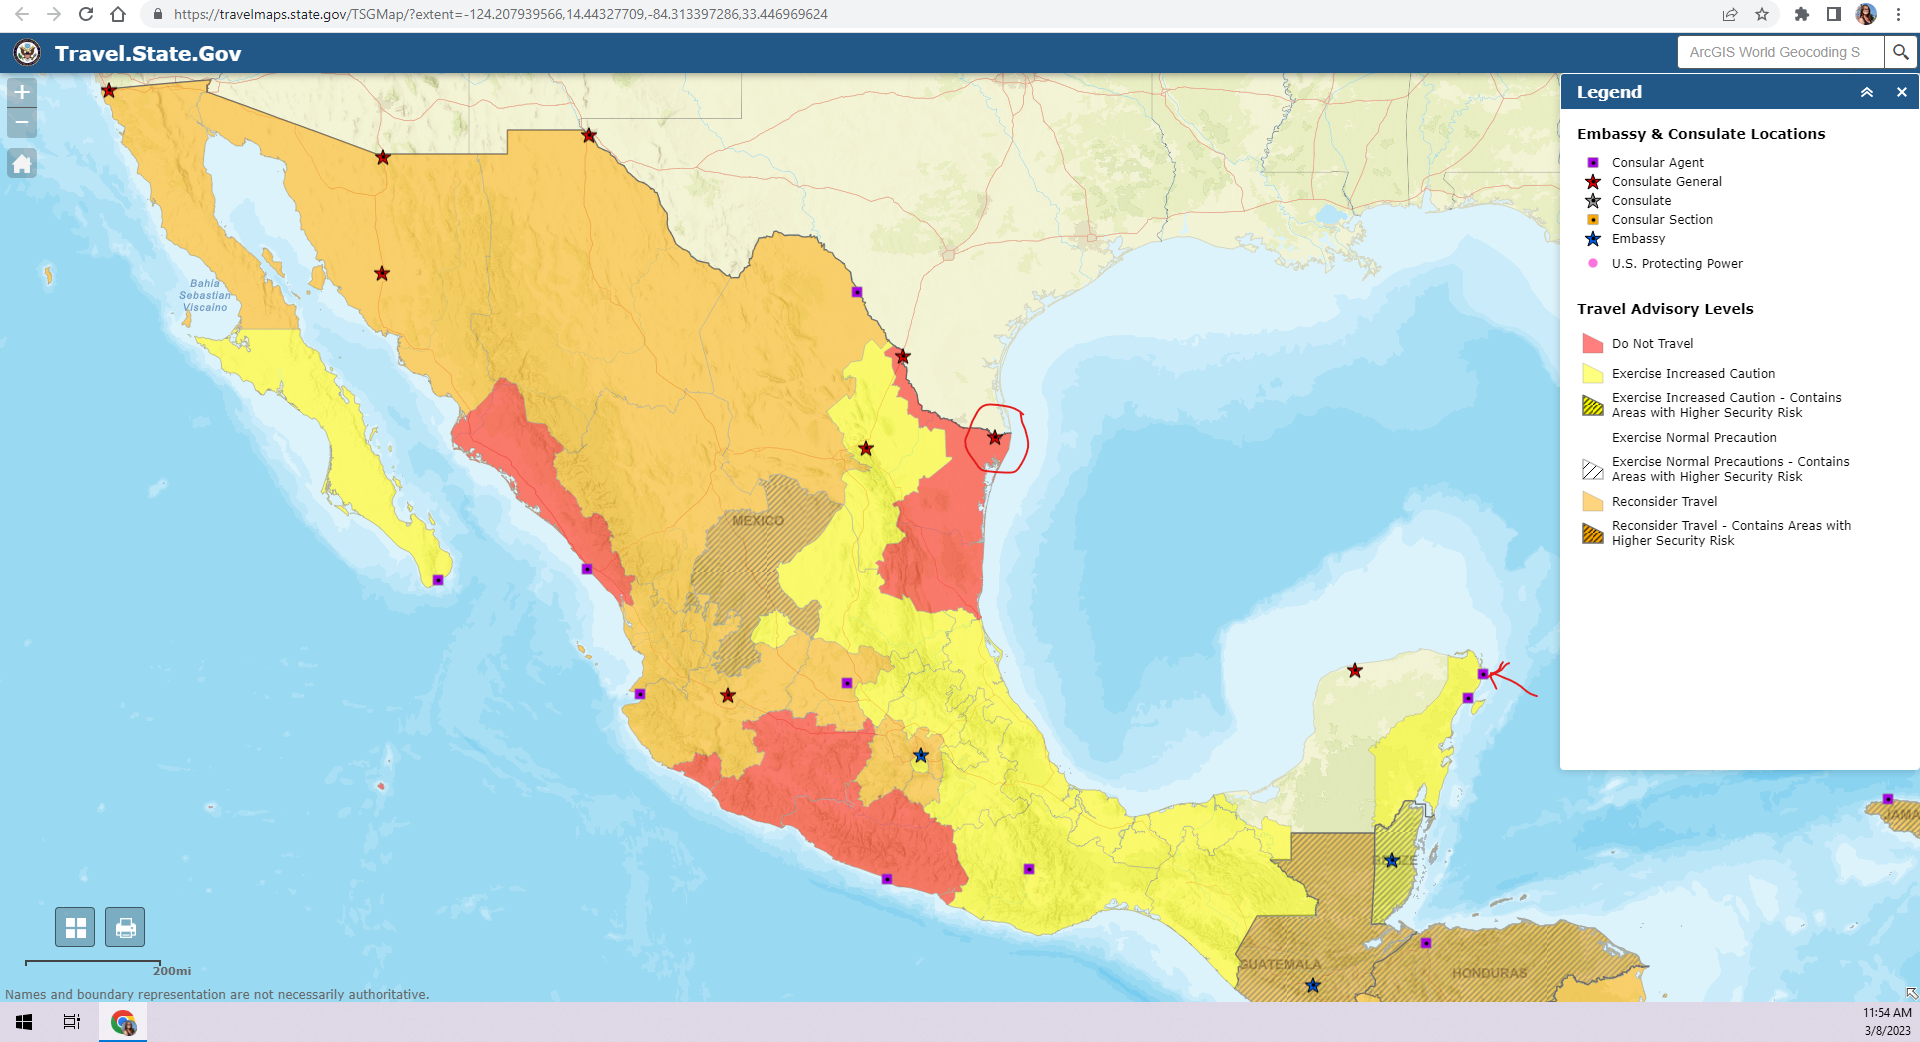 030823 Mexico Travel Advisory Map